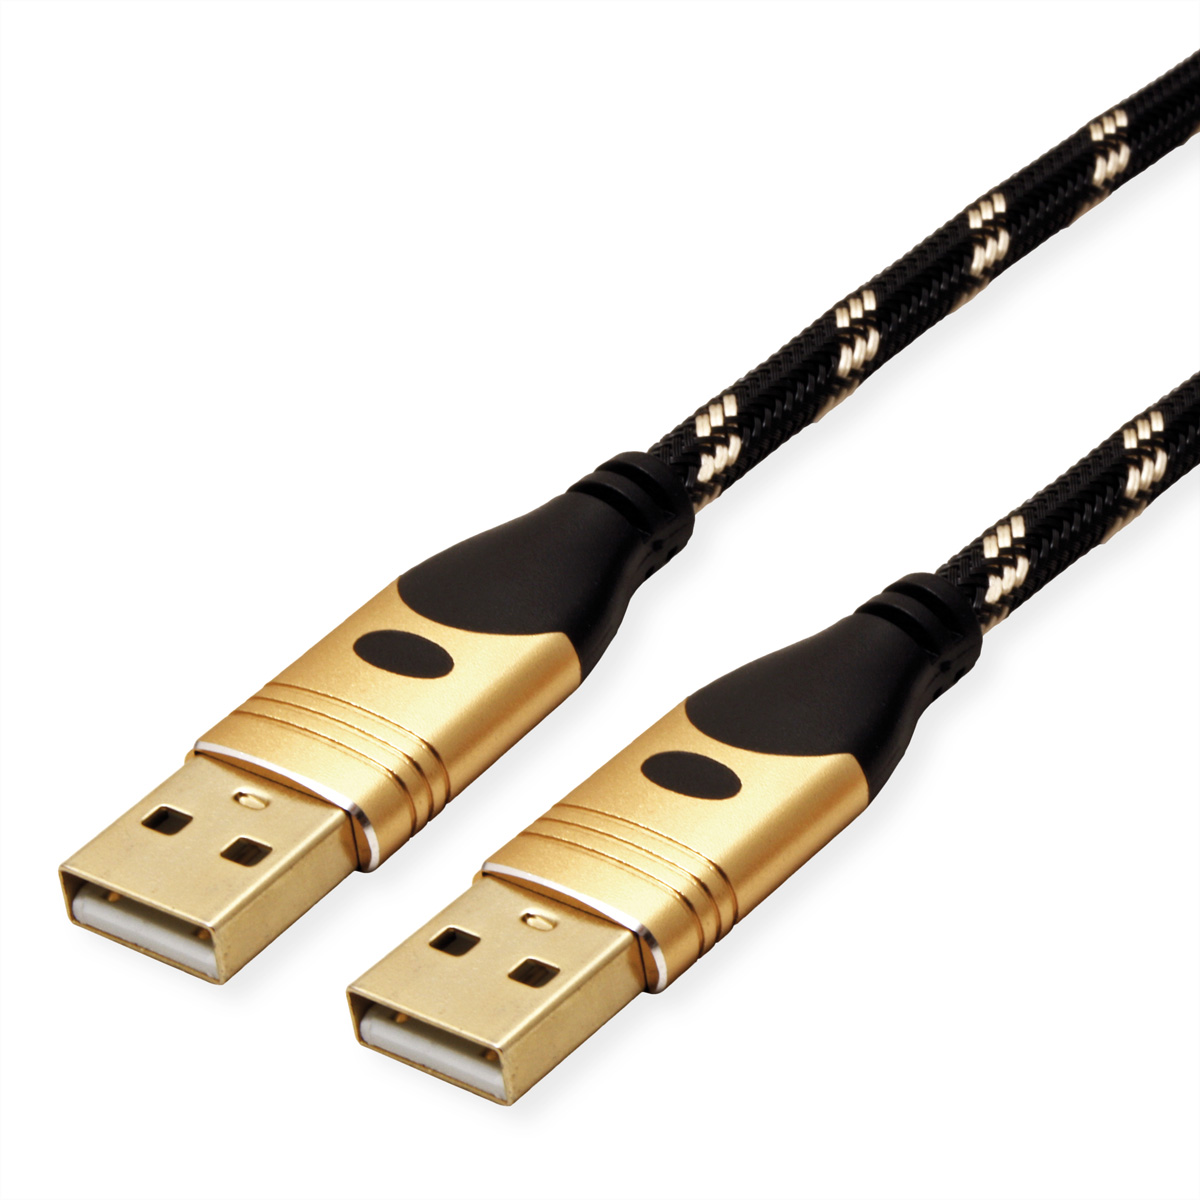 ROLINE GOLD USB Kabel 2.0 USB 2.0 Kabel